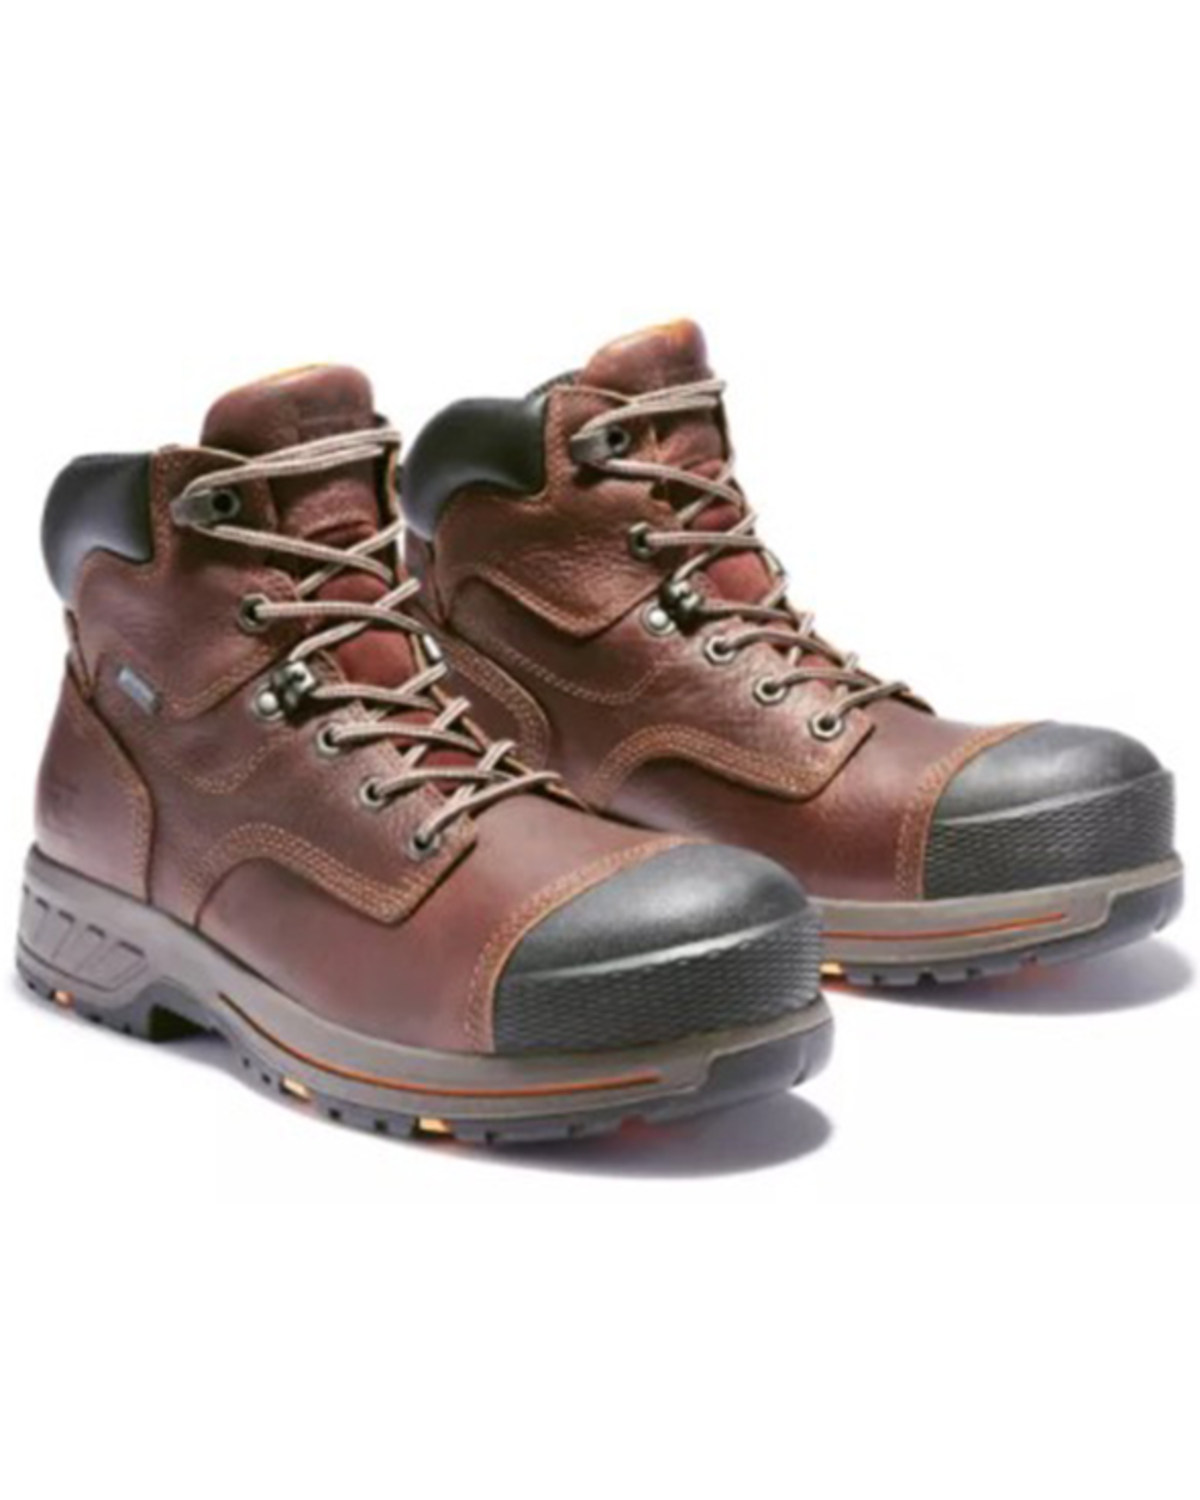 Timberland Men's Helix Waterproof Work Boots - Composite Toe